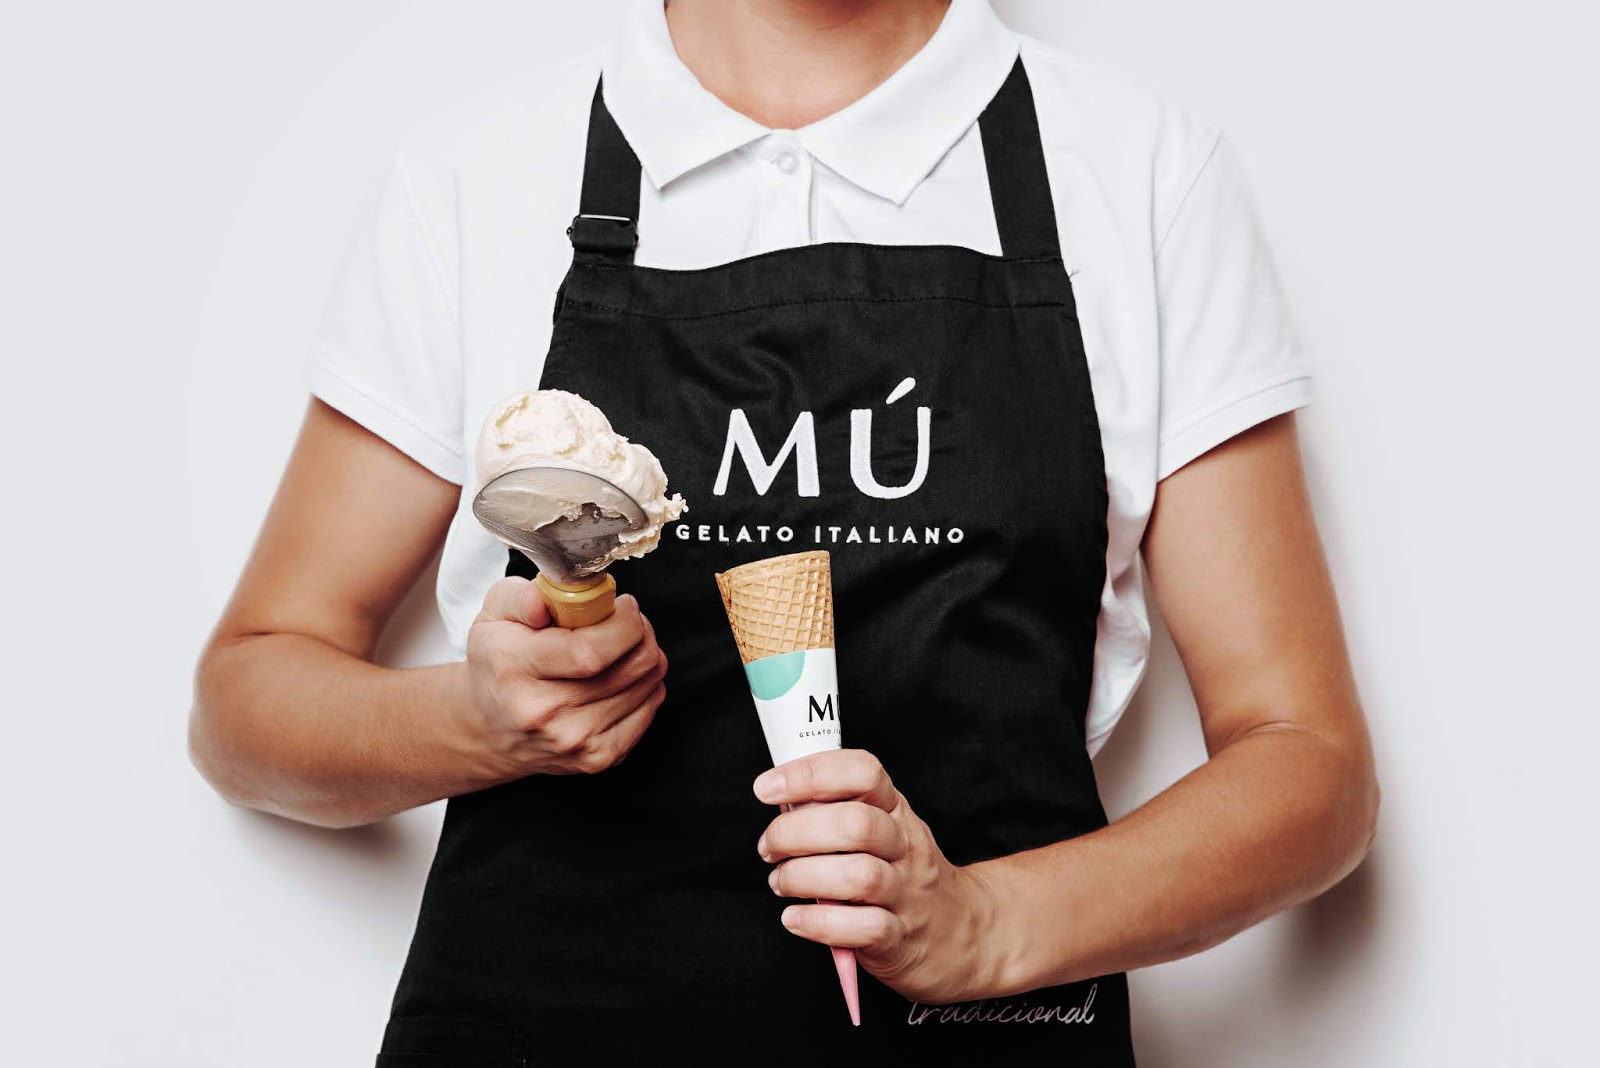 甜点冰淇淋美食西安oe欧亿体育app官方下载
品牌策划包装设计VI设计logo设计